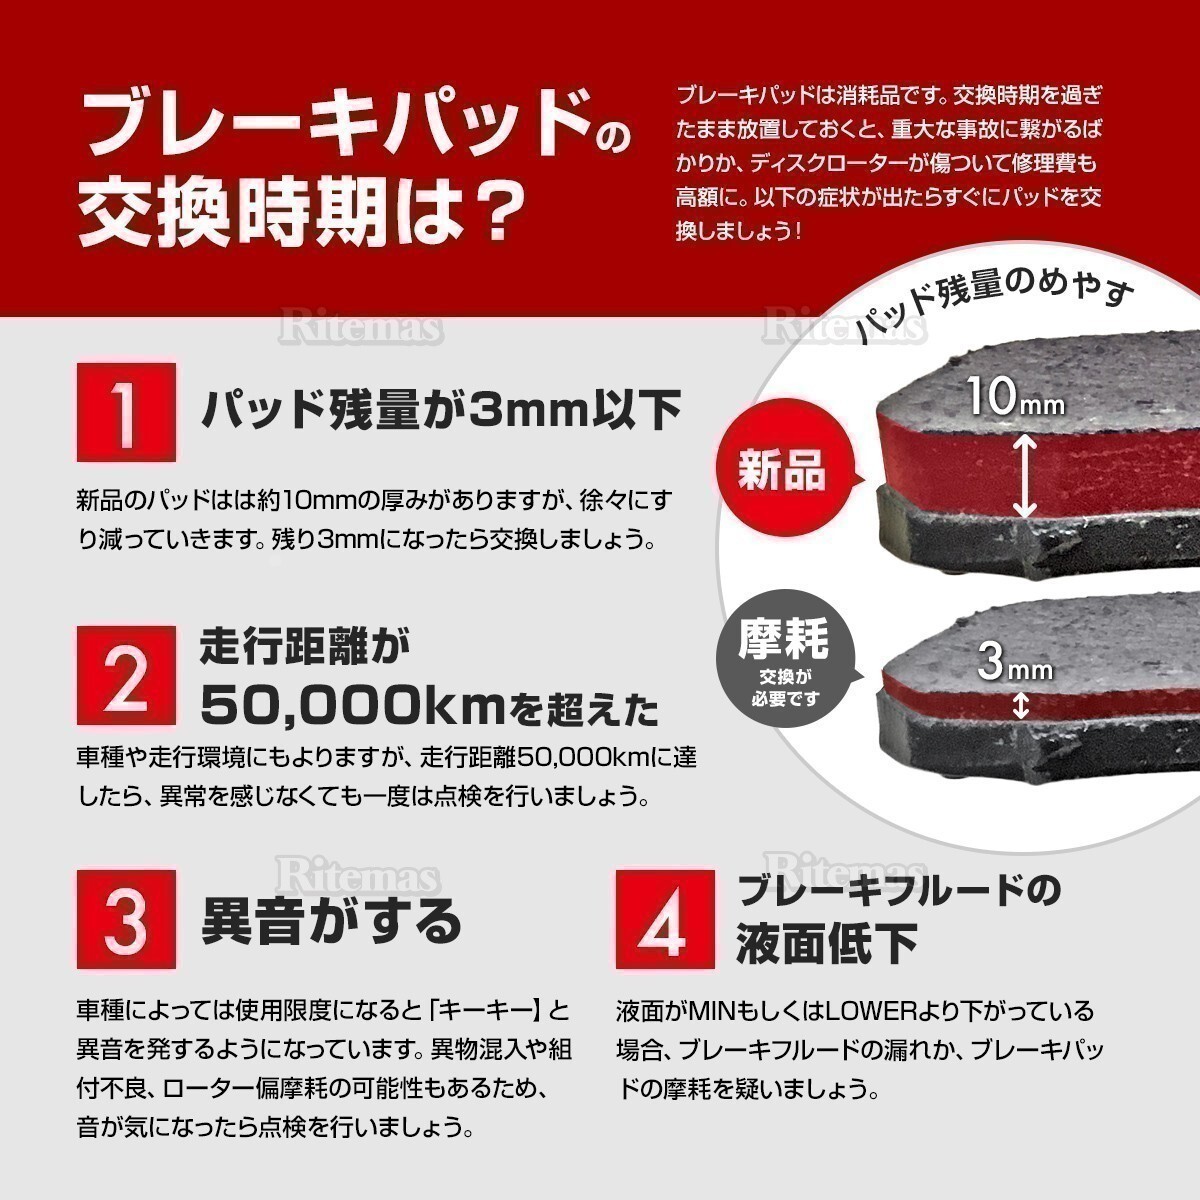  передние тормозные накладки Honda Civic Ferio ES2 ES3 ES ET2 тормозная накладка левый правый set 4 листов H12/9 45022-S7A-000 06450-S5A-J00